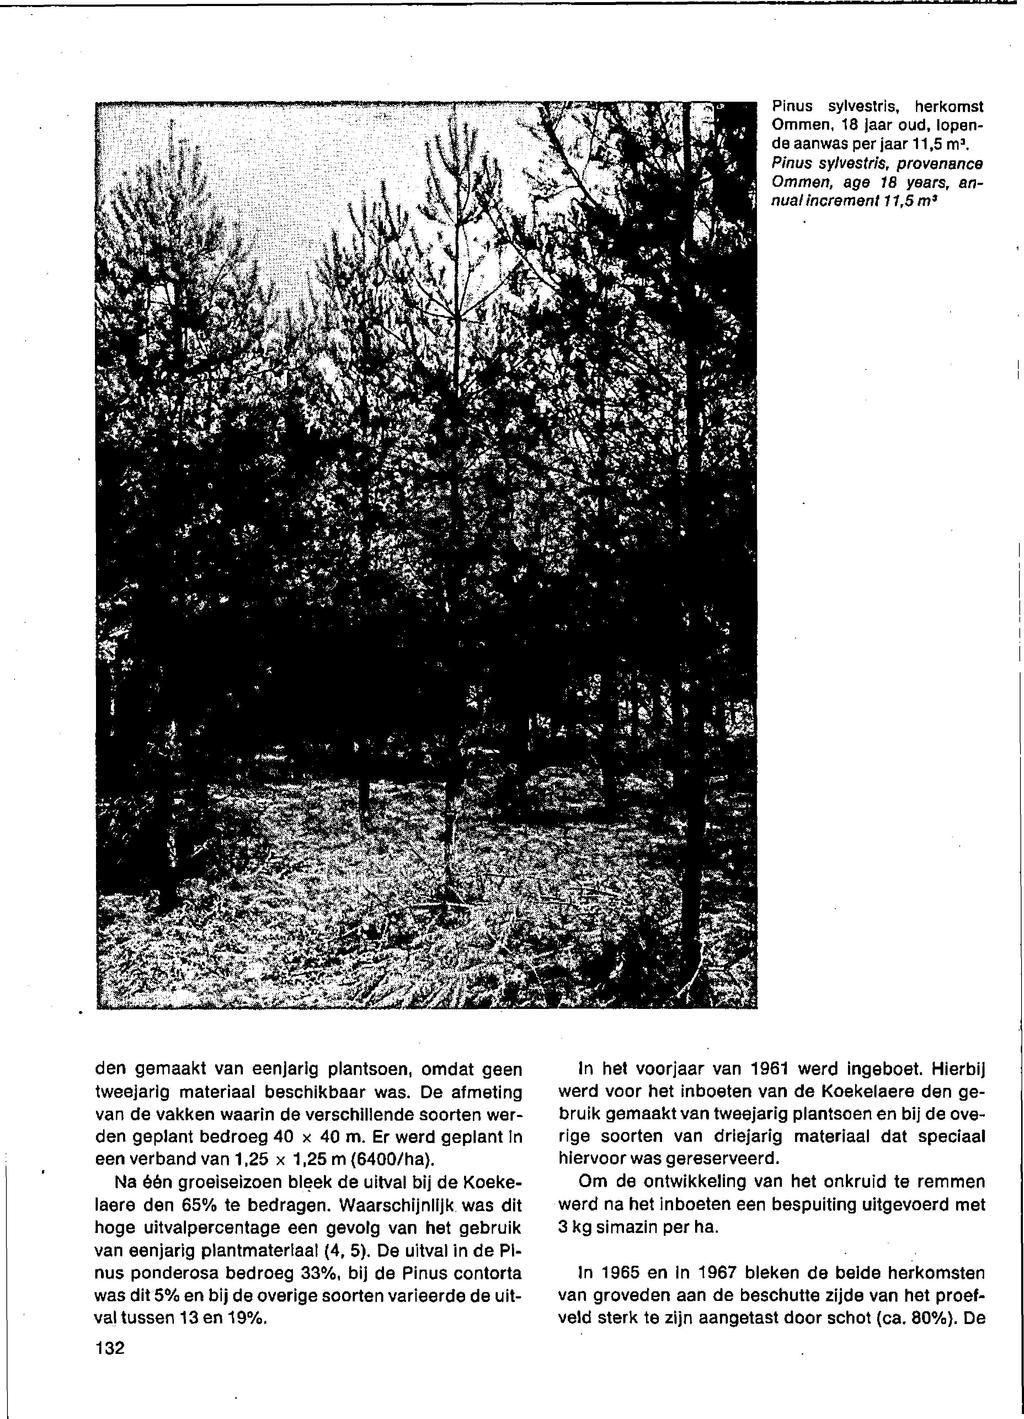 Pinus sylvestris, herkomst Ommen, 8 jaar oud, lopende aanwas per jaar,5 m a. Pinus sylvestris, provenance Ommen, age 8 years, annual increment,5 m3 v 7- v IvtSTC^ H fe" ïjgjy; ^.